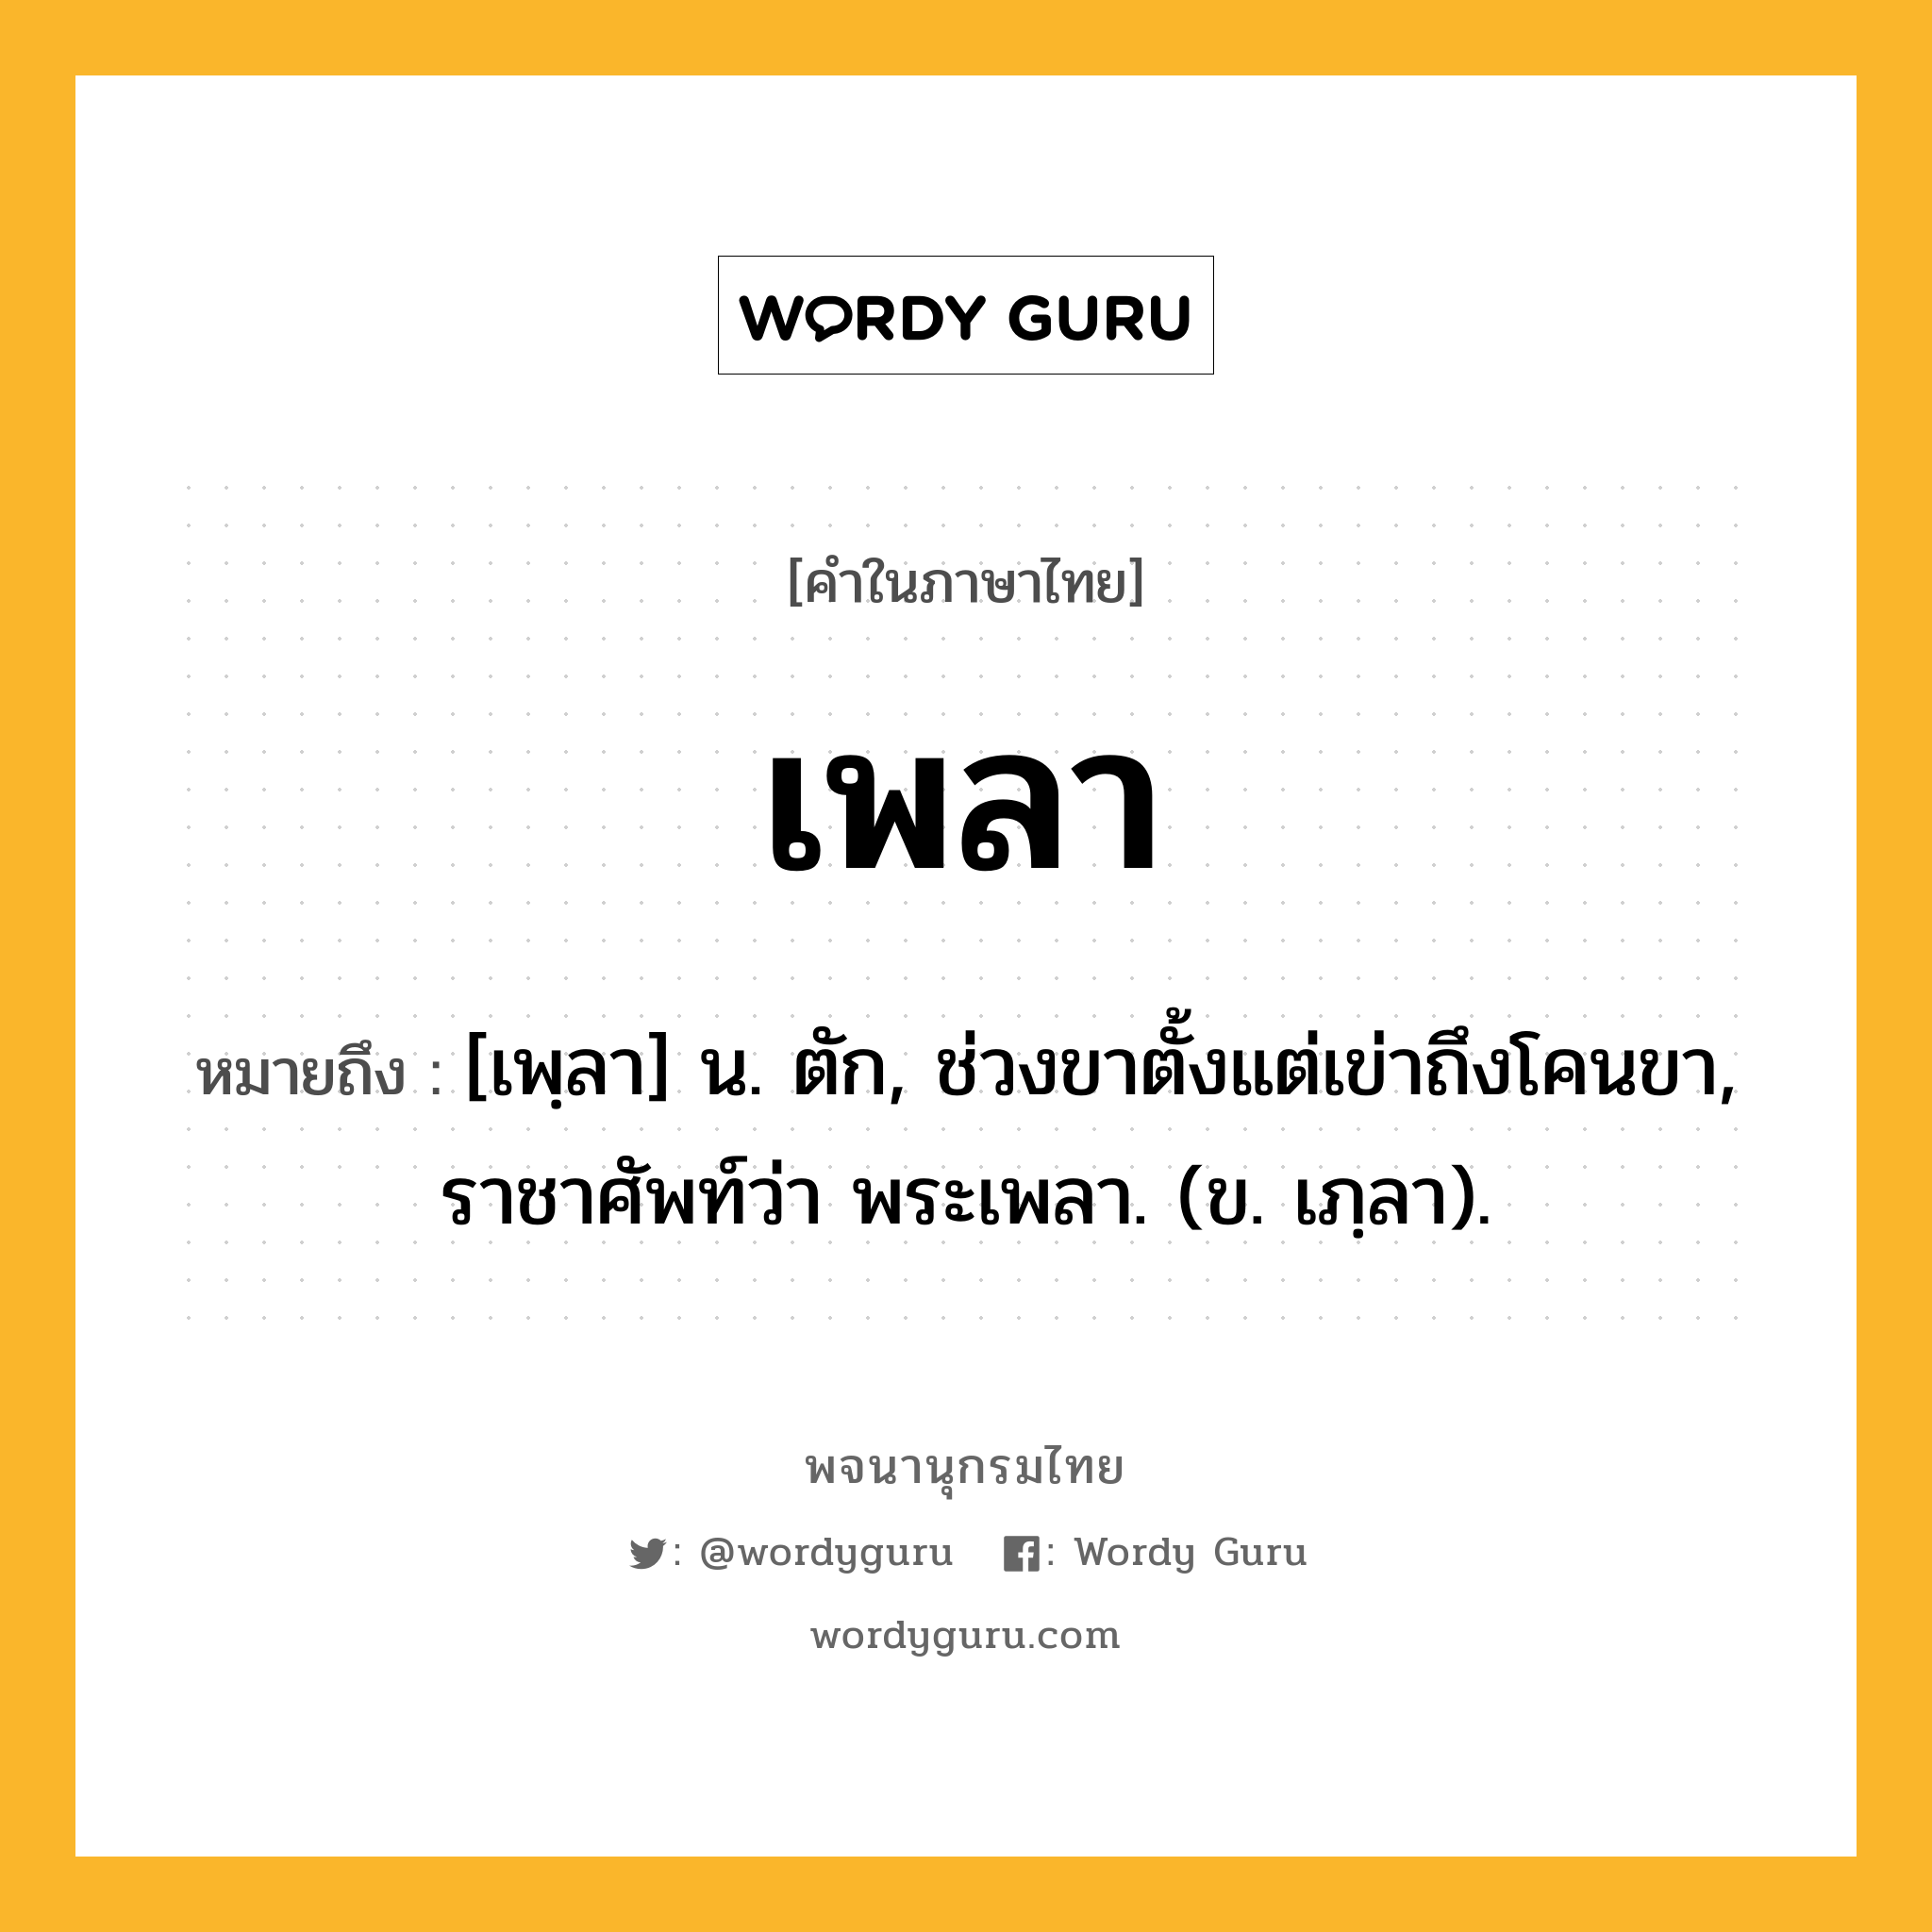 เพลา ความหมาย หมายถึงอะไร?, คำในภาษาไทย เพลา หมายถึง [เพฺลา] น. ตัก, ช่วงขาตั้งแต่เข่าถึงโคนขา, ราชาศัพท์ว่า พระเพลา. (ข. เภฺลา).